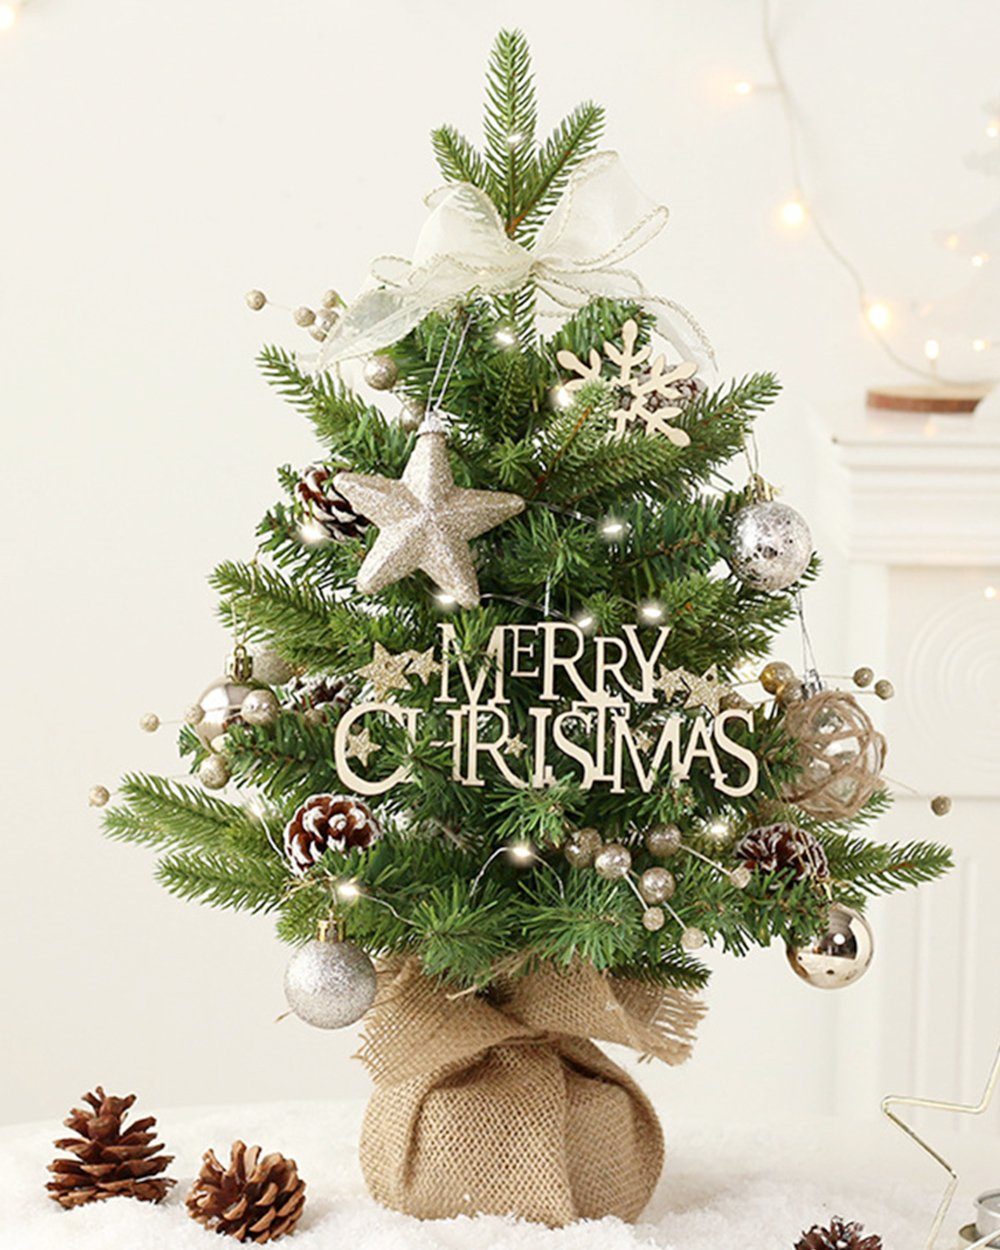 Dekorative Künstlicher Weihnachtsbaum Mini Künstlich Weihnachtsbaum, Tisch Tannenbaum Weihnachten, Mit drehbarem Oktavfuß Tisch Tannenbaum Weihnachten Deko für Büro | Künstliche Weihnachtsbäume